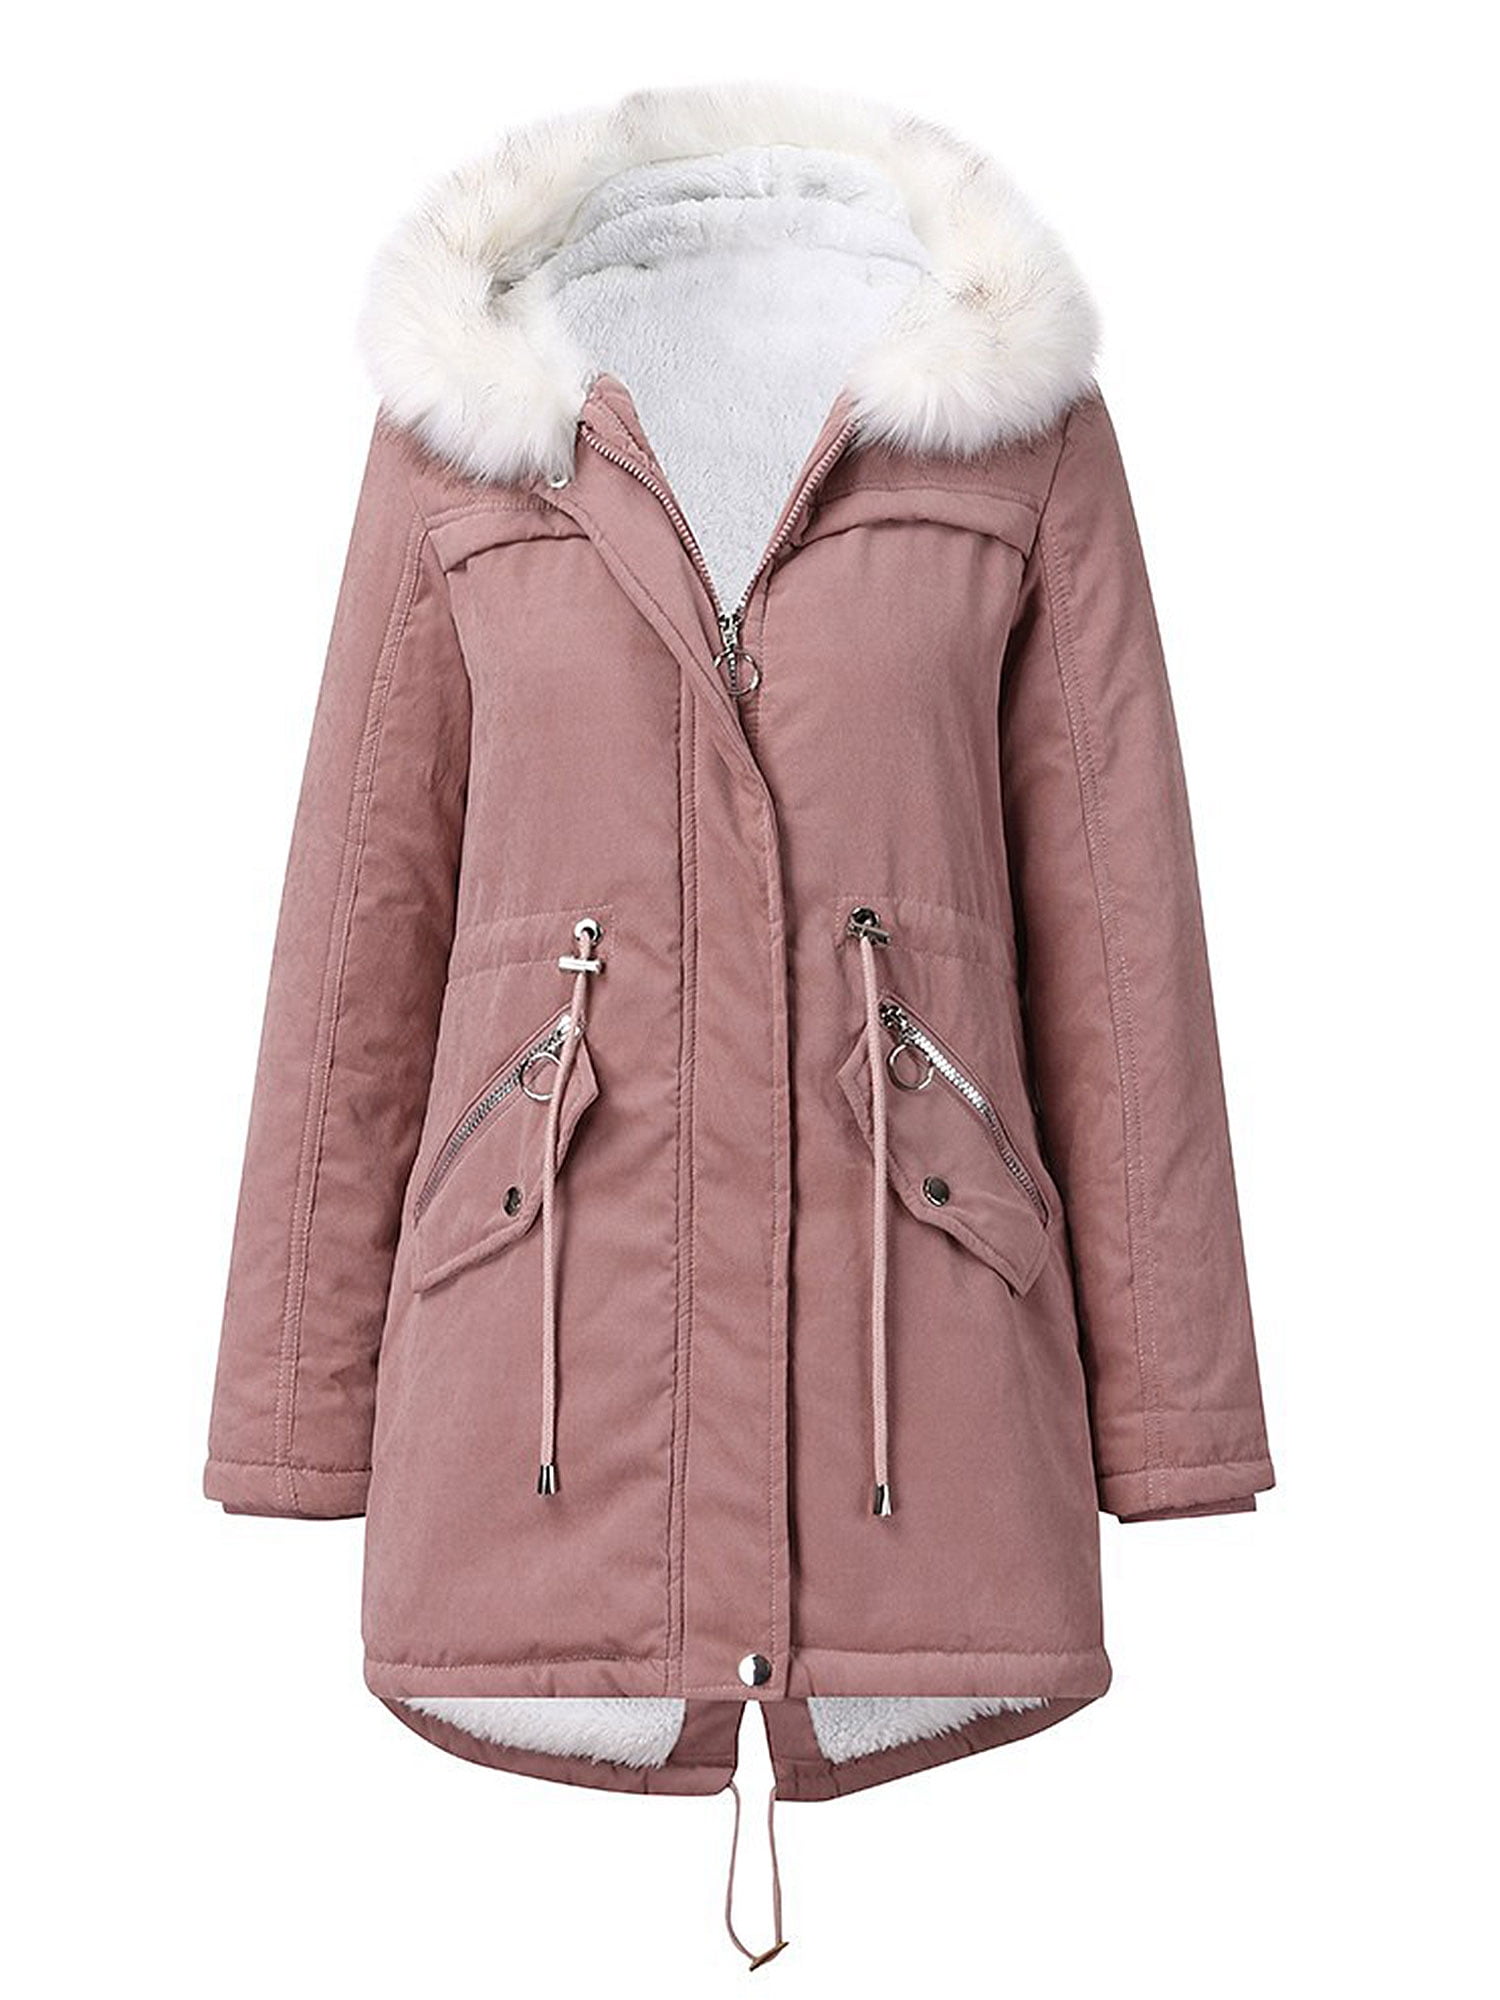 CURLBIUTY Womens Coat Casual Lapel Fleece Fuzzy Zipper Warm Winter Jackets 